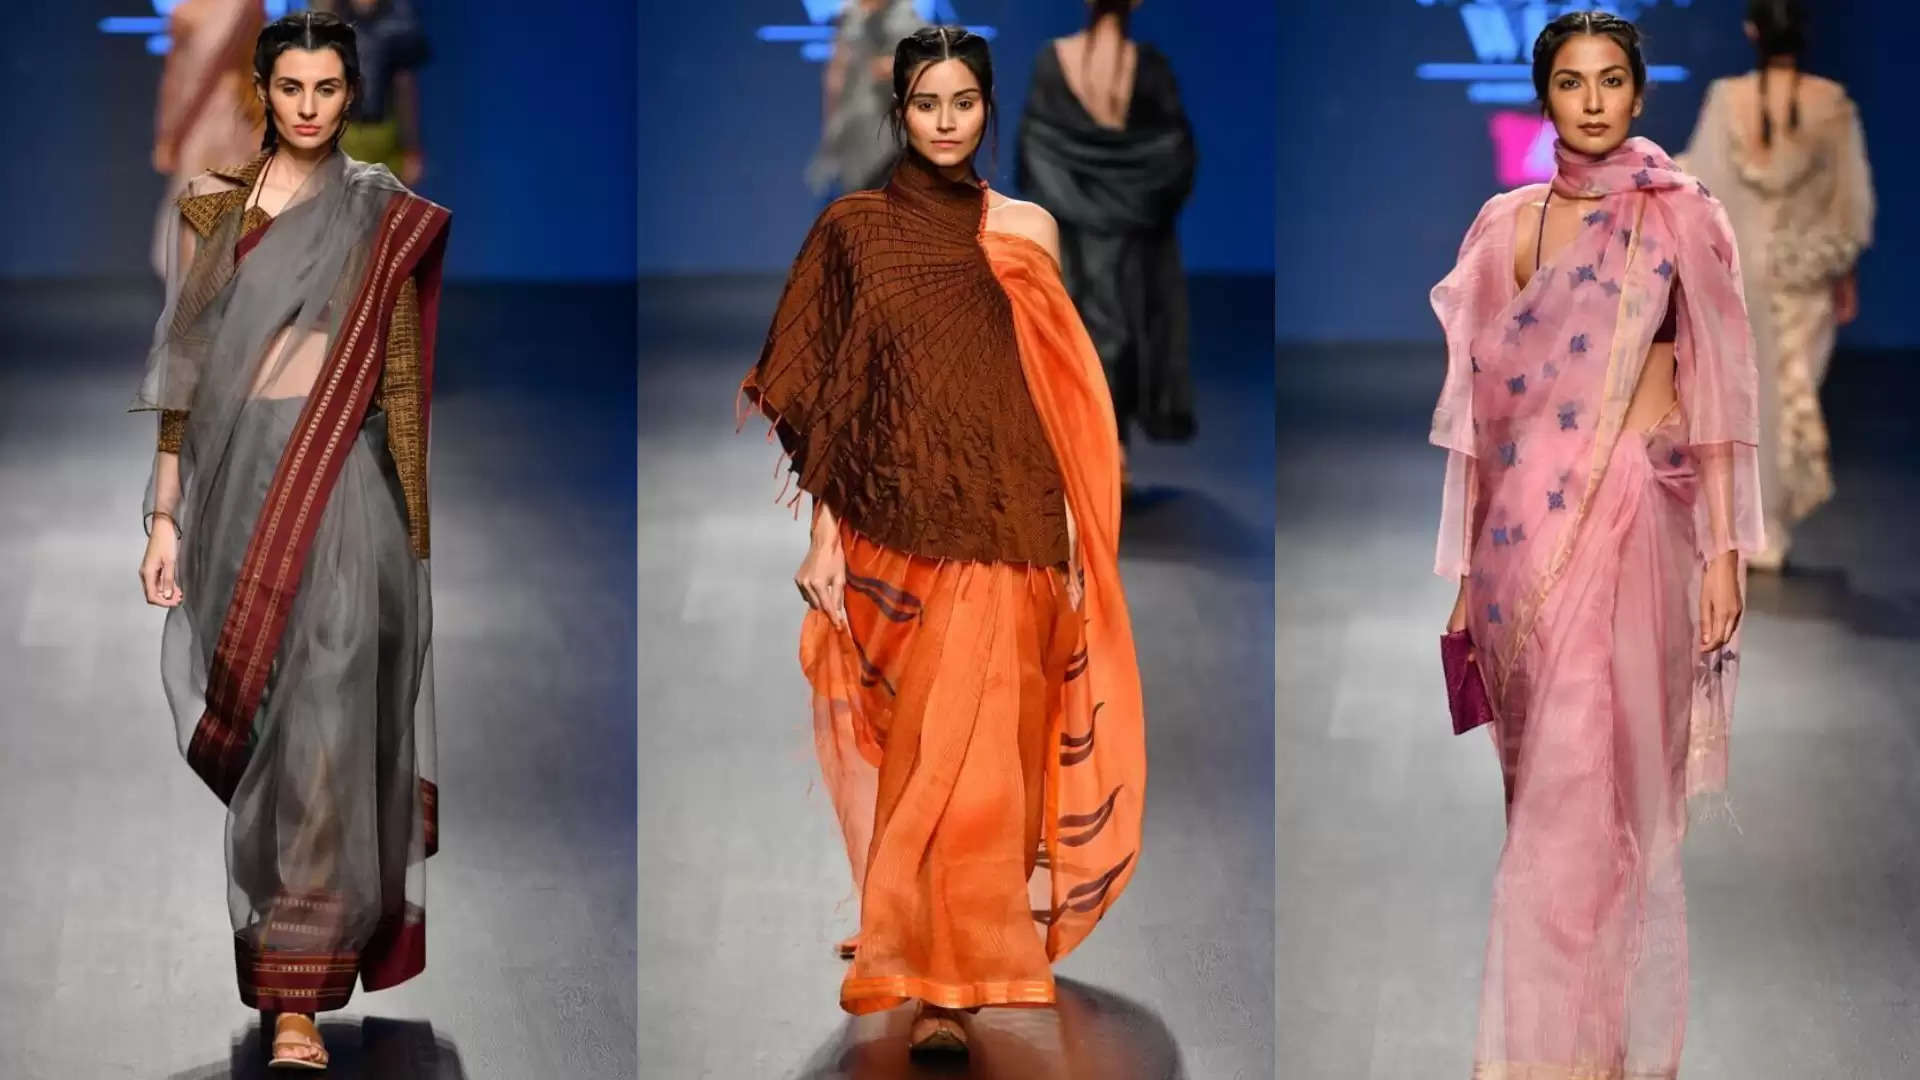 Fashion: यह पहली बार है जब पेरिस में प्रसिद्ध फैशन वीक में किसी भारतीय महिला डिजाइनर को आमंत्रित किया गया है, वह कौन है?